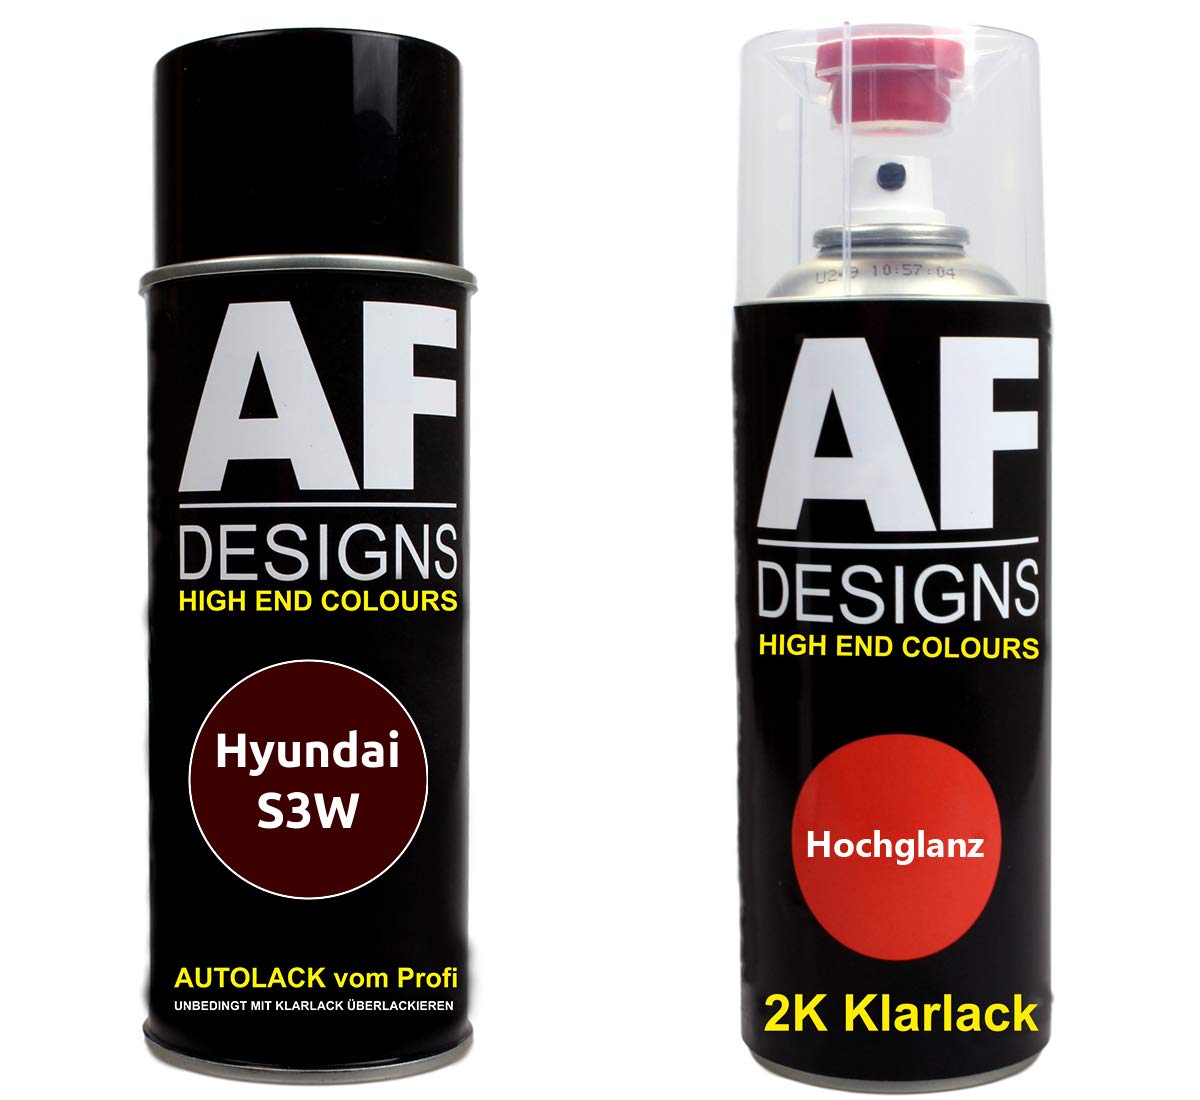 Alex Flittner Designs Autolack Spraydose Set für Hyundai S3W Ruby Wine Metallic 2K Klarlack Basislack Sprühdose Spraydosen 2x400ml von Alex Flittner Designs